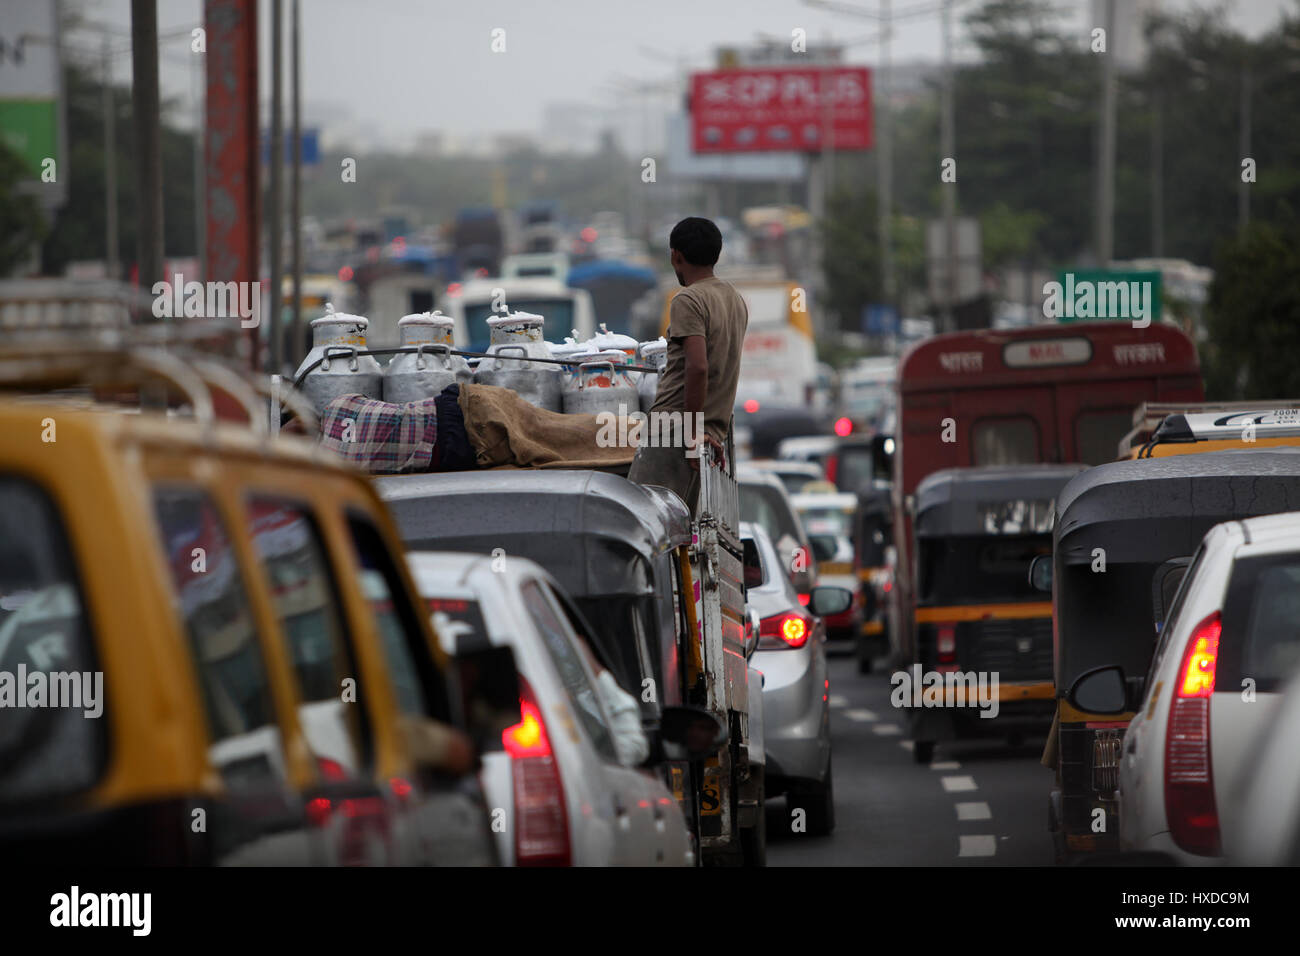 Stau mit einem Milchmann, stehend auf seinem van während einem trüben regnerischen Tag in Indien. Stockfoto